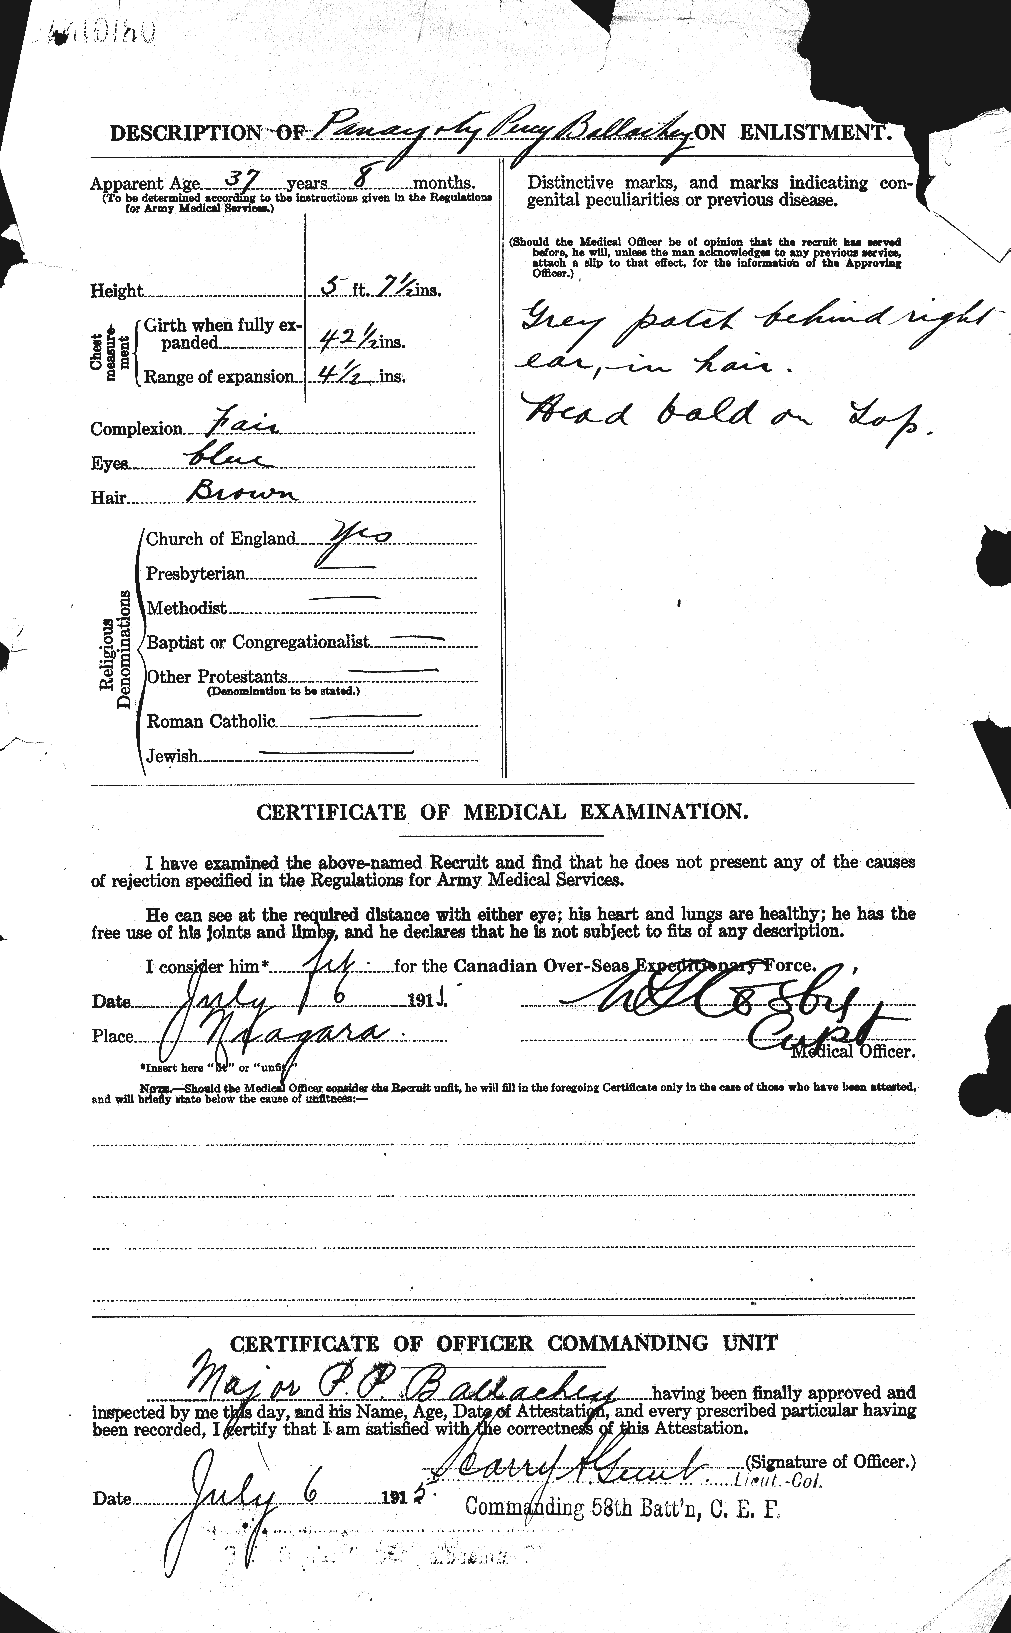 Dossiers du Personnel de la Première Guerre mondiale - CEC 219864b